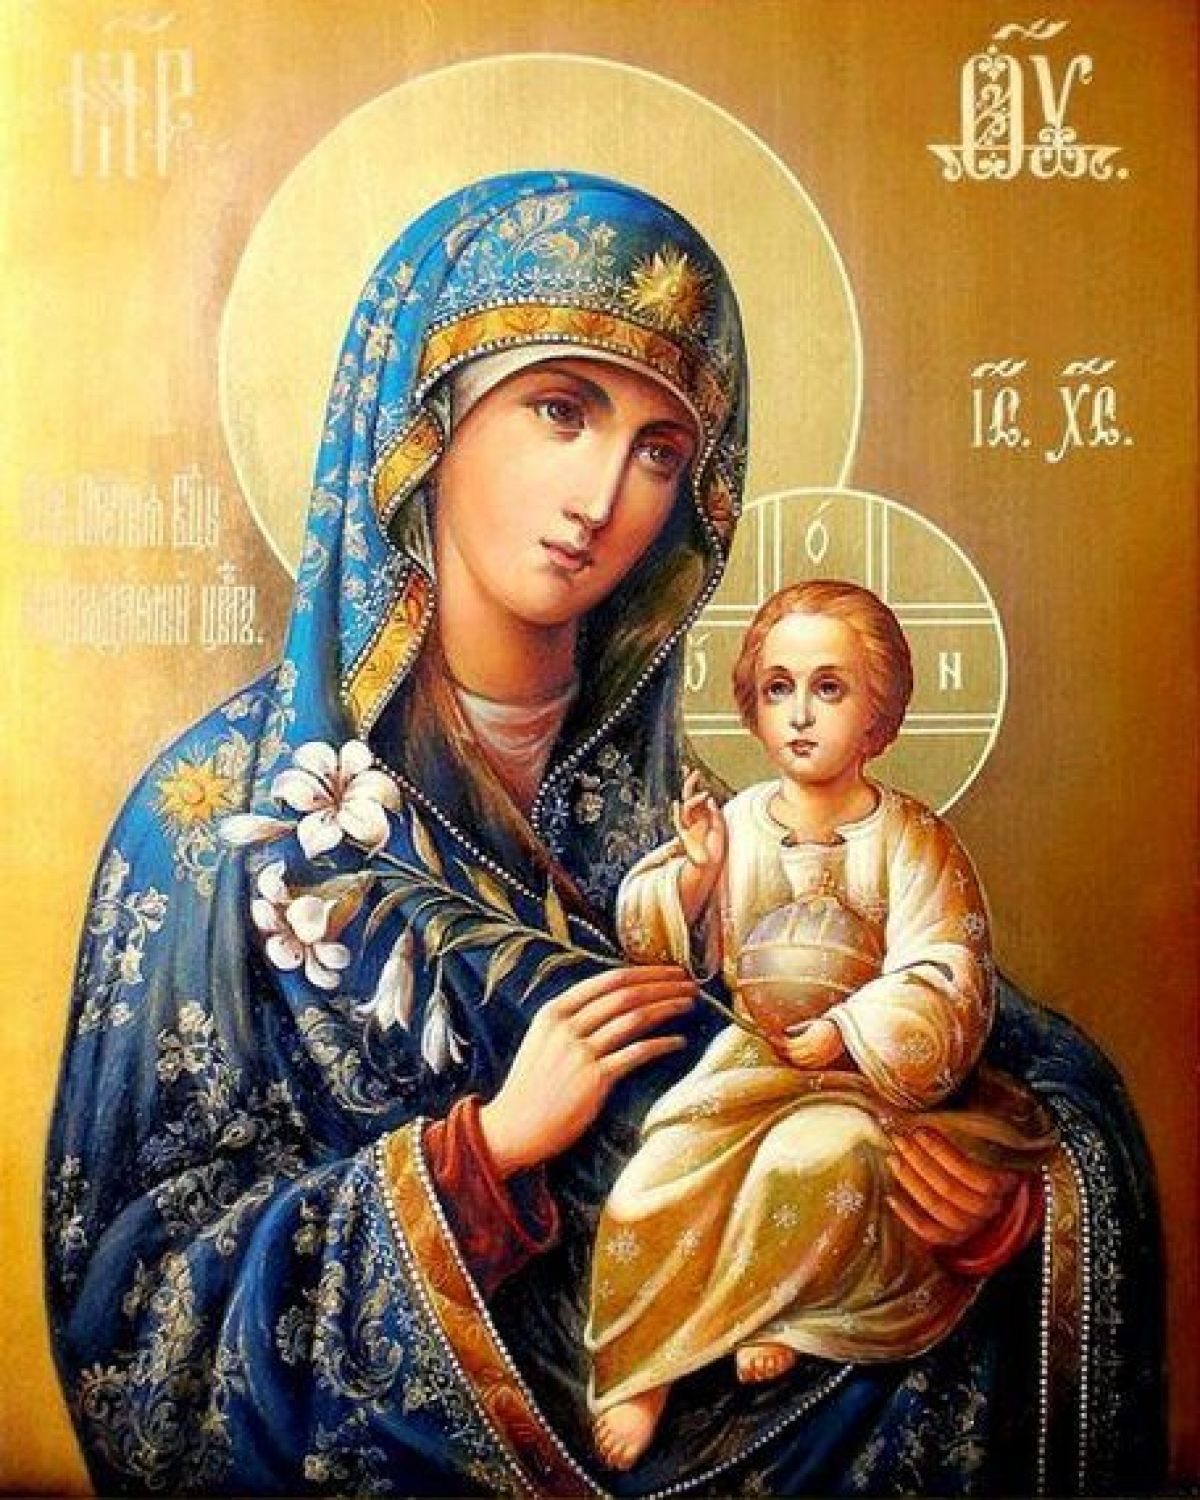 Fecioara Maria nu avea o împodobire lumească, ca a tuturor fecioarelor